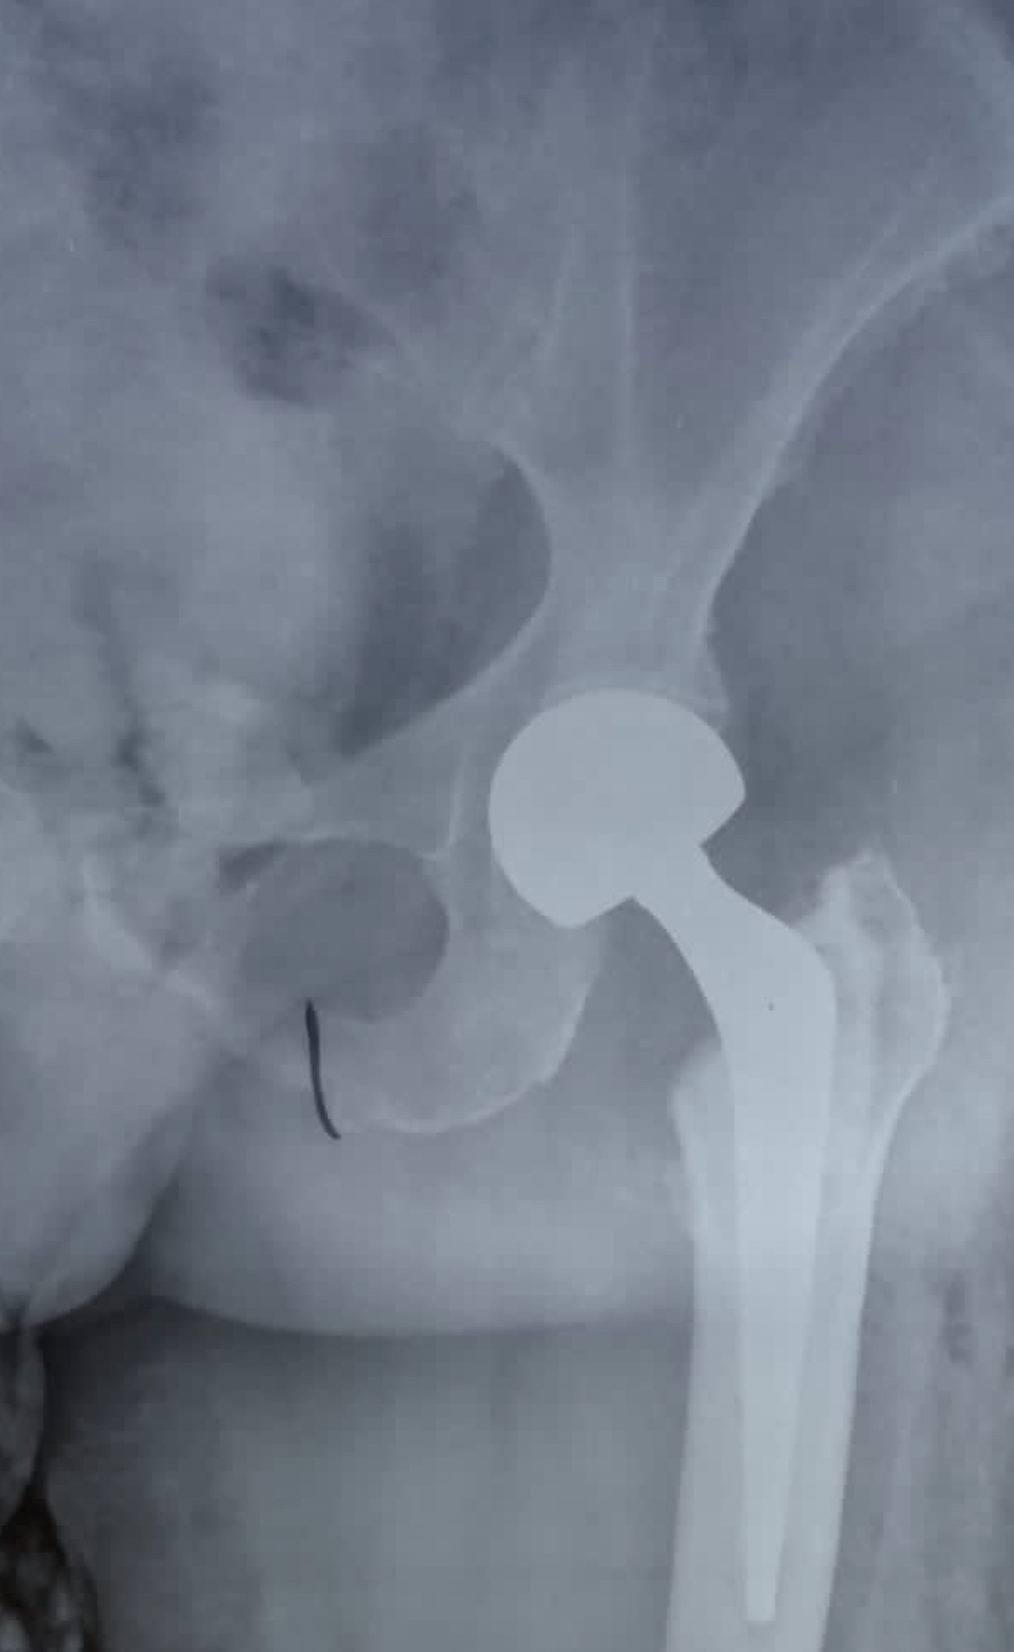 Radiografia de quadril com prótese parcial de quadril. Cirurgia mais comum em pacientes com fratura do colo do fêmur e baixa expectativa de vida.